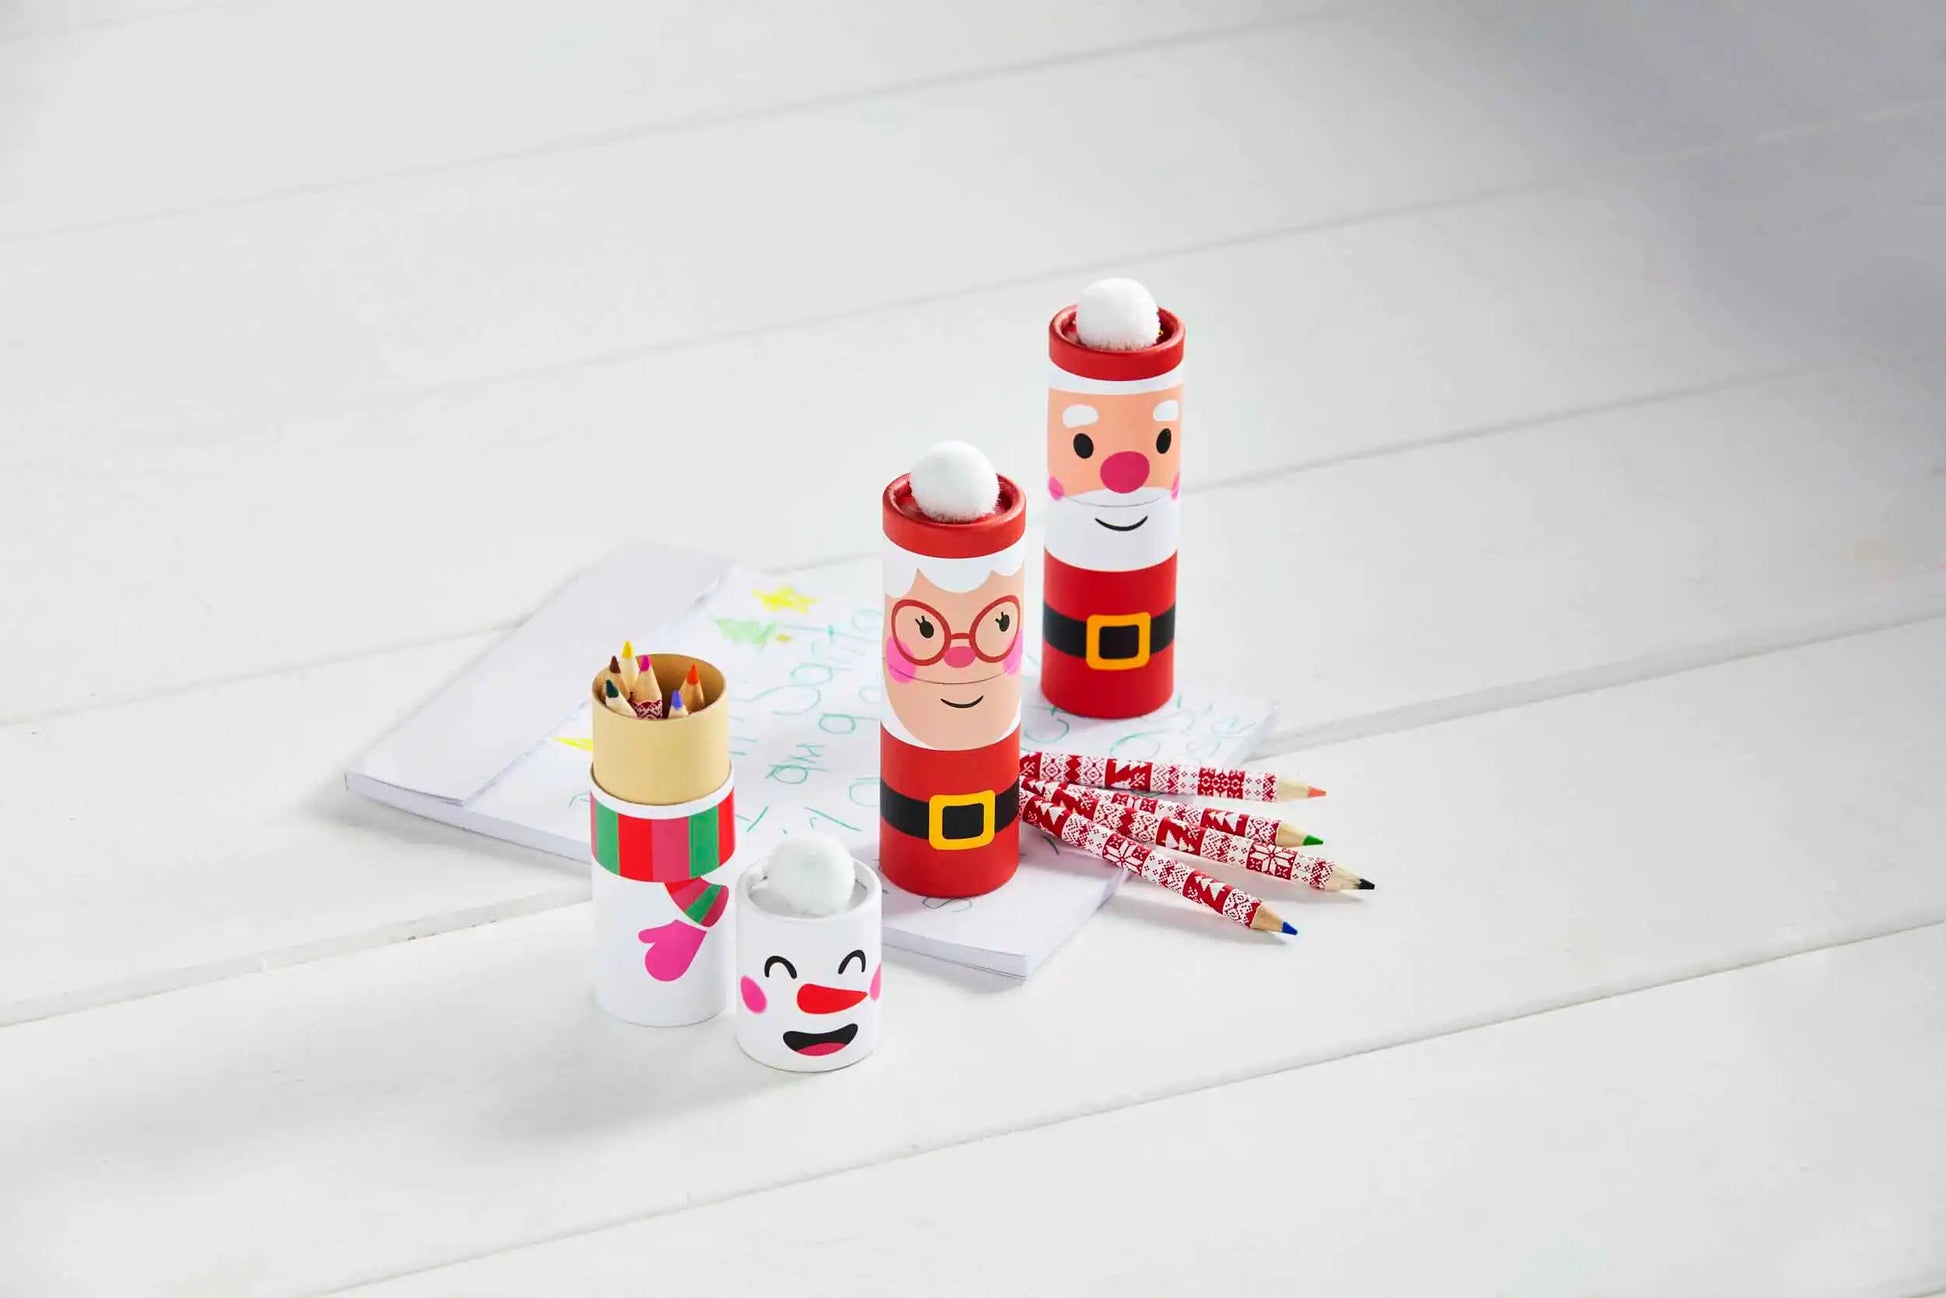 Snowman Christmas Colored Pencil Set  - Doodlebug's Children's Boutique